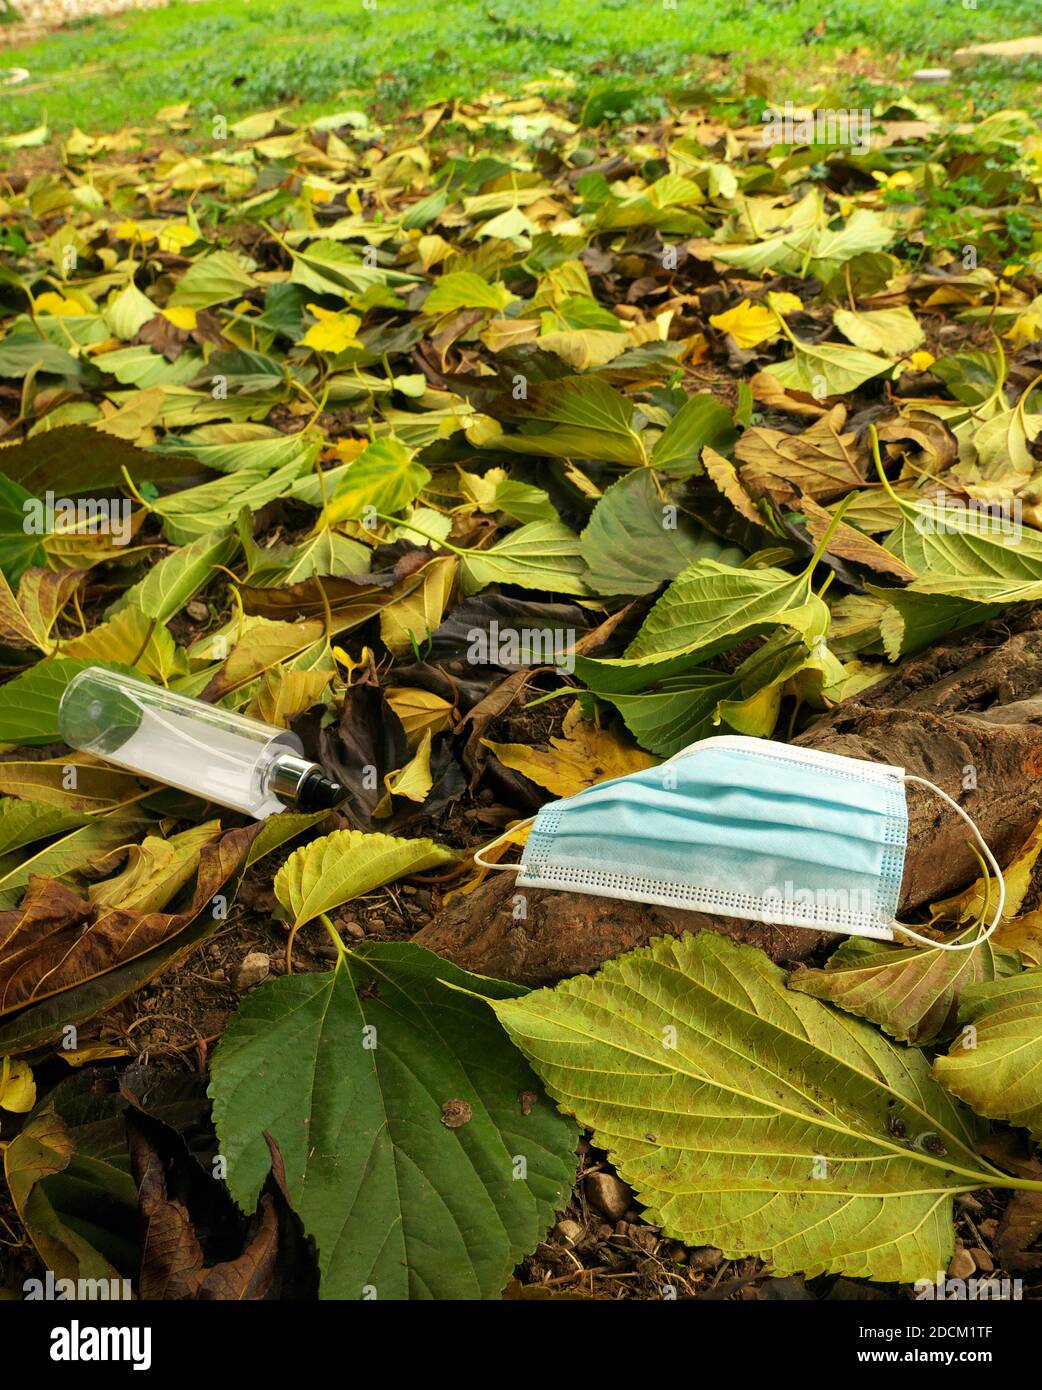 Maschera e gel idroalcolico gettati in natura al centro di foglie d'autunno Foto Stock